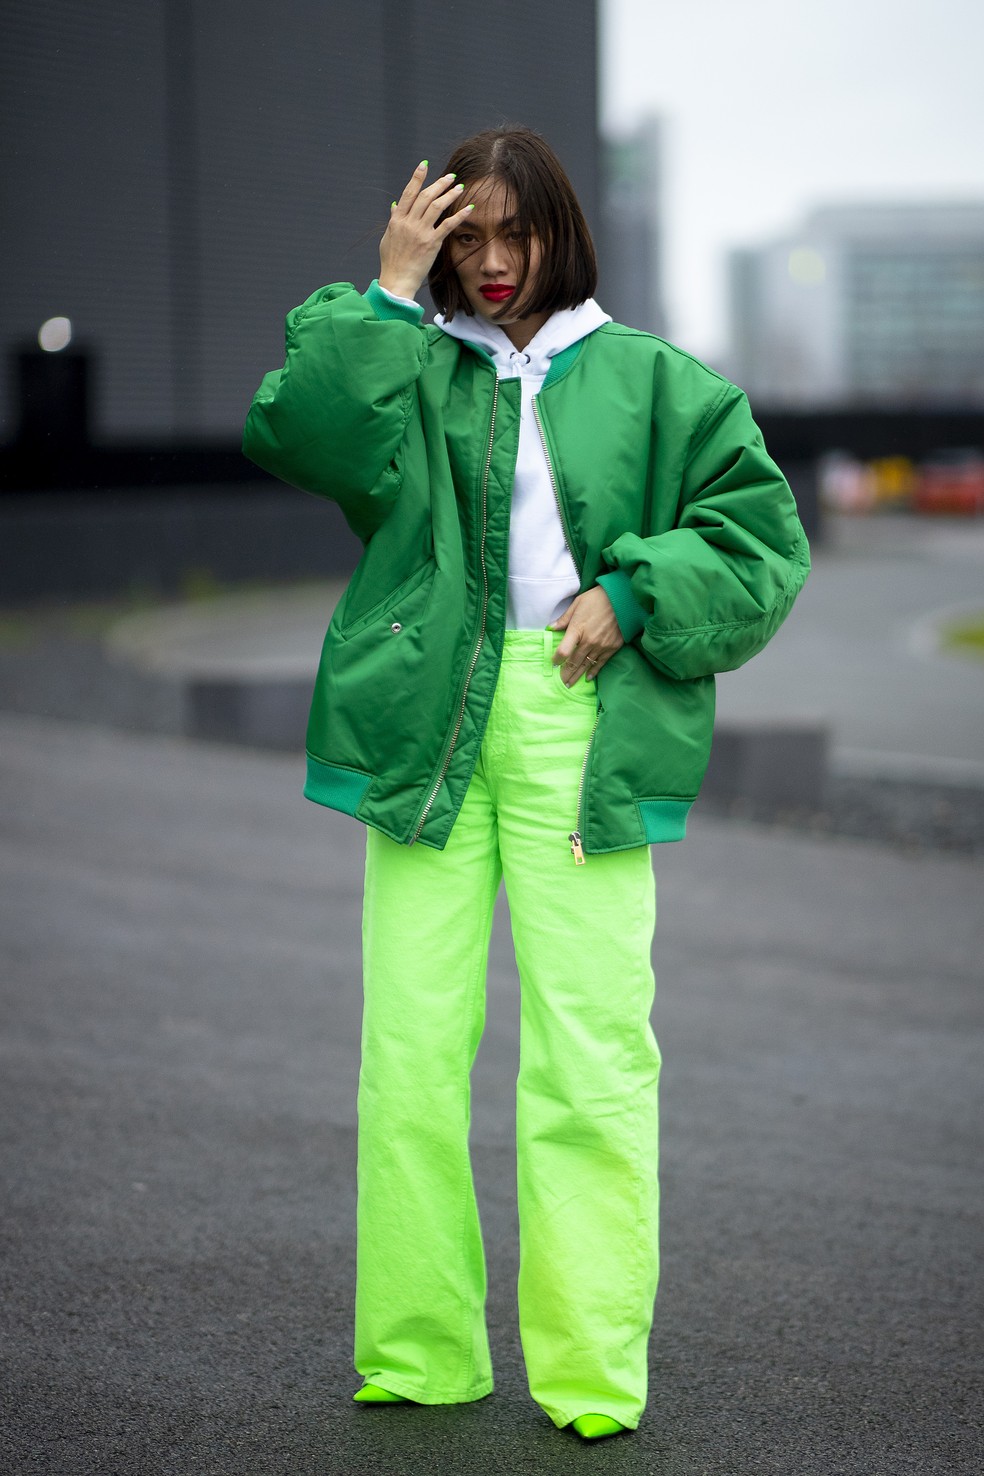 Calça verde limão + jaqueta verde bandeira: a combinação funciona e fica supercool — Foto: IMAXTree